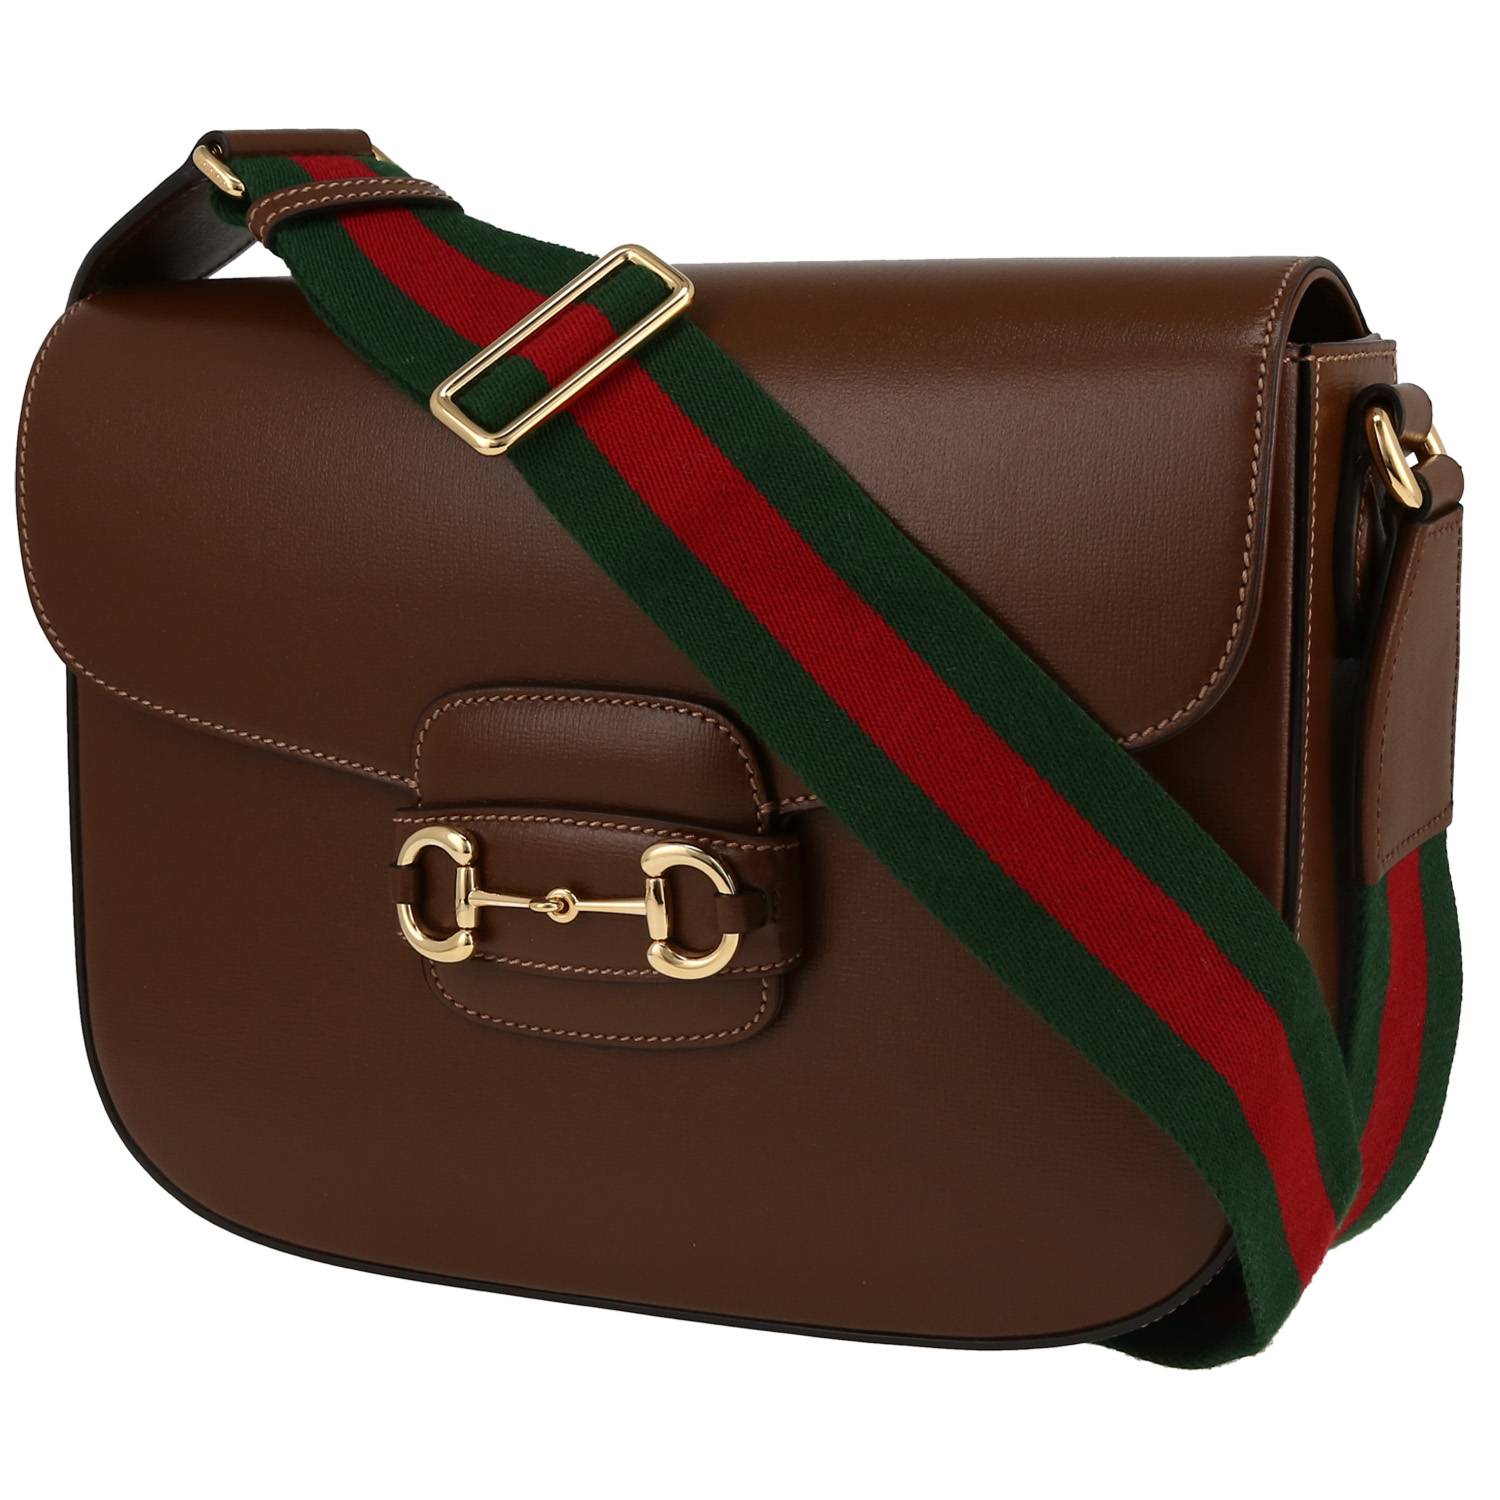 Gucci | Horsebit 1955 Embellished Leather-trimmed Coated-canvas Shoulder Bag  | Brown | One size | MILANSTYLE.COM